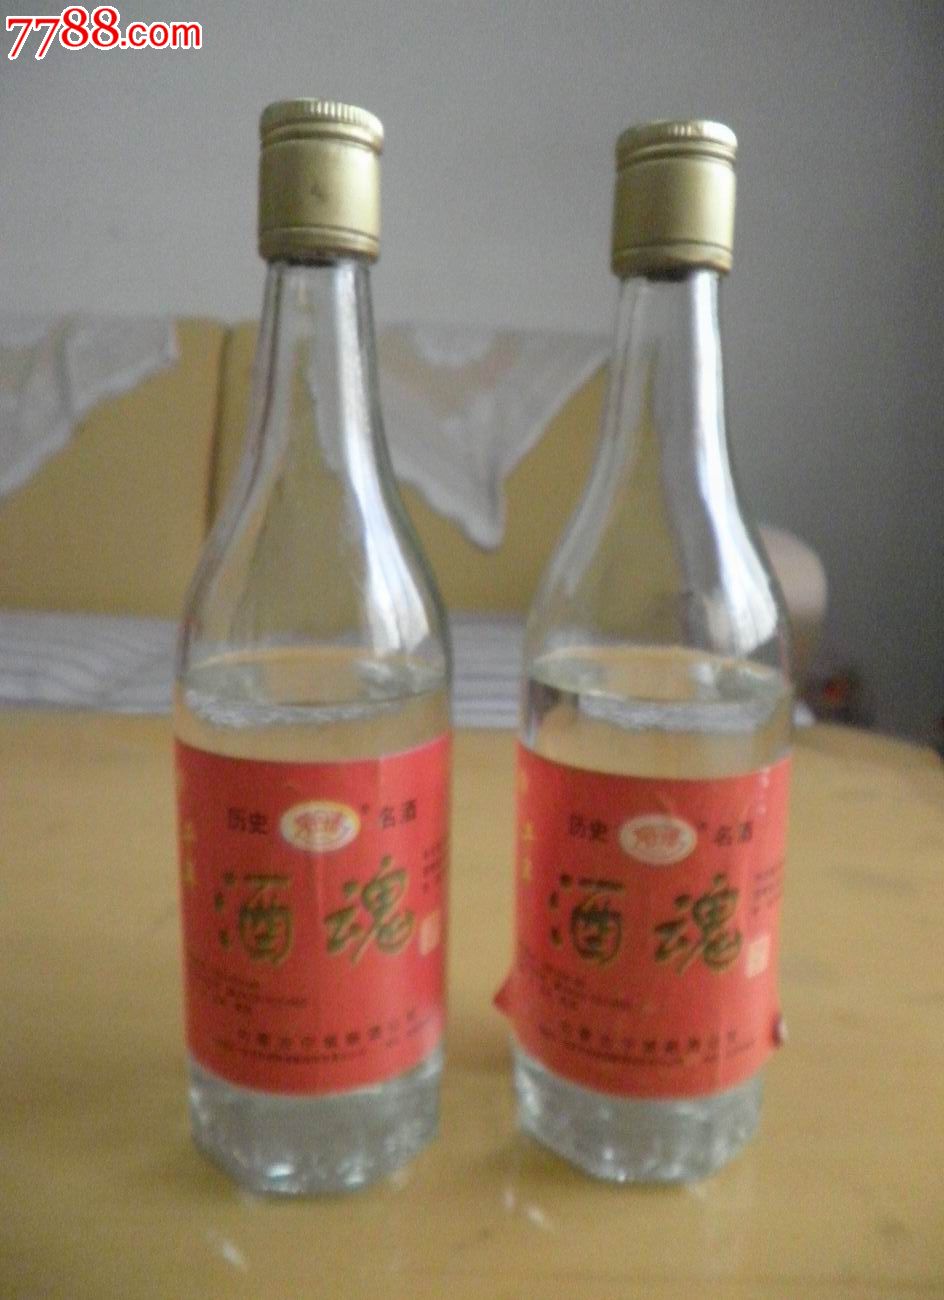 契丹春酒魂酒两瓶-价格:80.0000元-se22262365-酒瓶